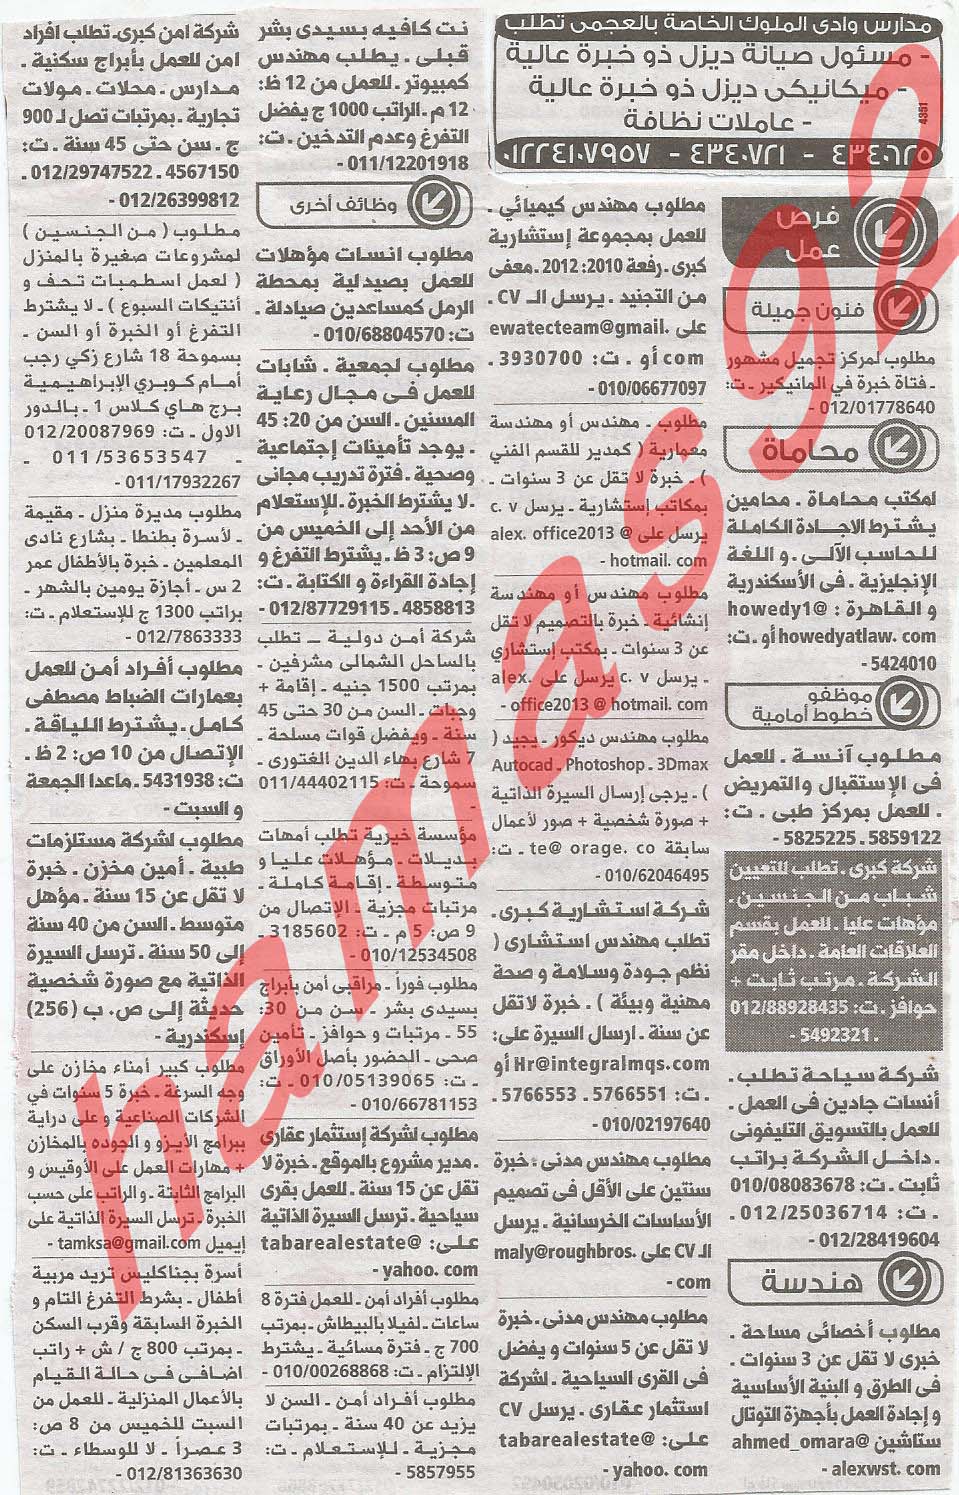 وظائف شاغرة من جريدة الوسيط الاسكندرية - مصر الاثنين 18/2/2013 %D9%88+%D8%B3+%D8%B3+5